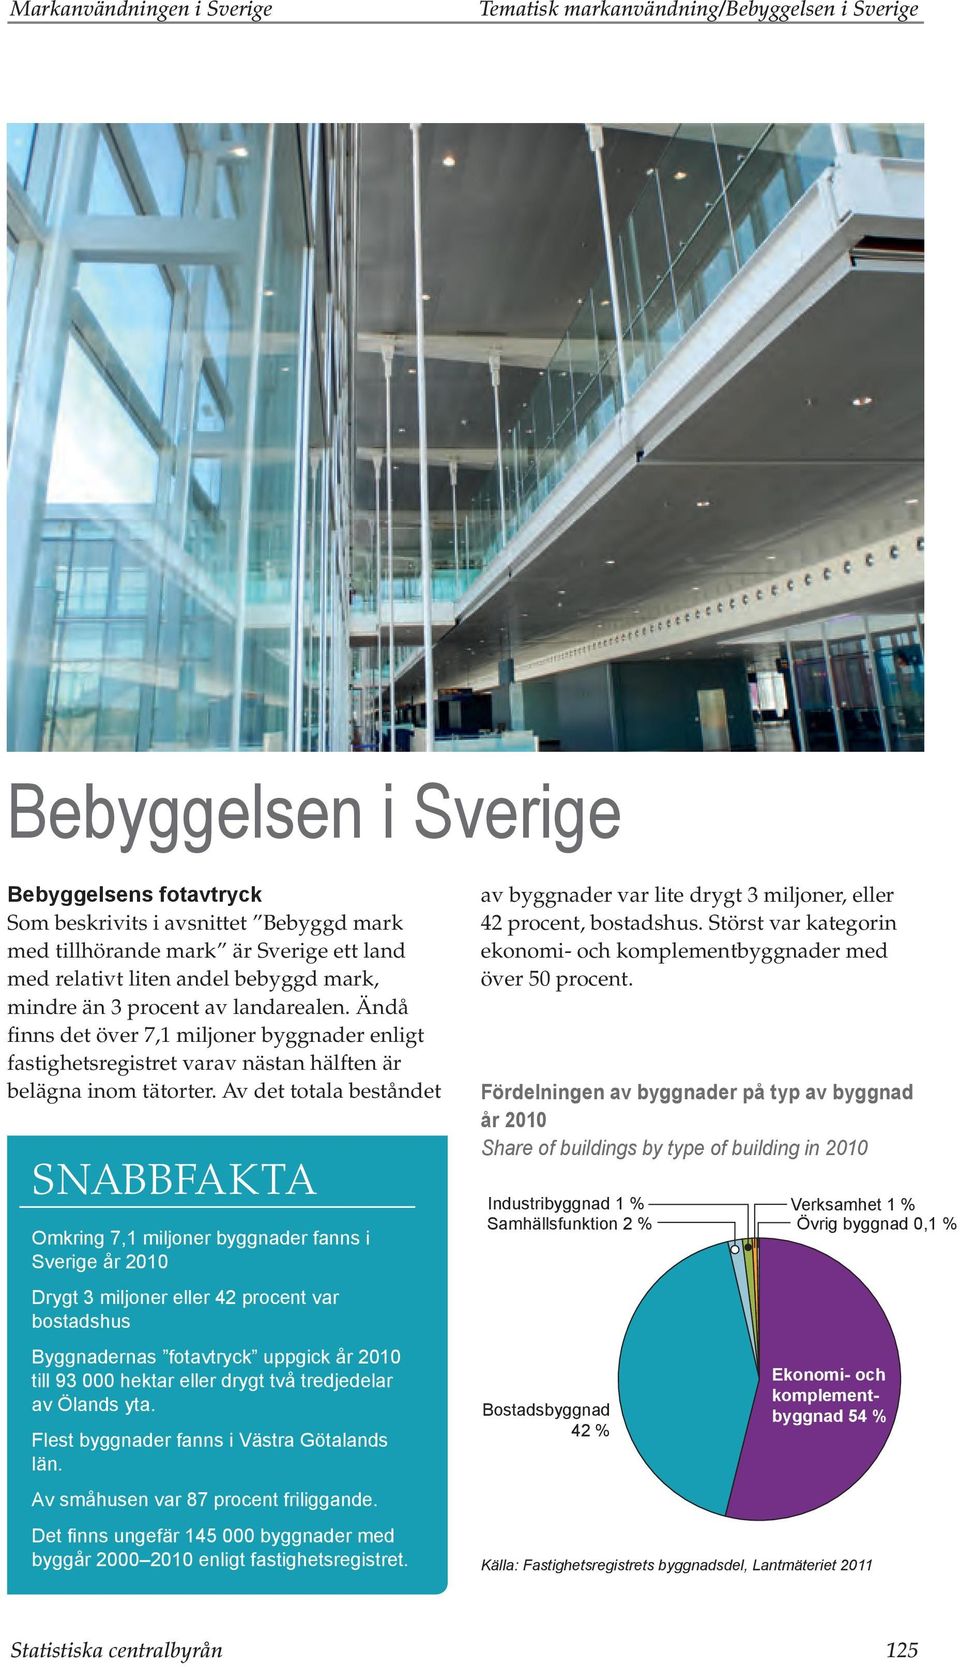 Av det totala beståndet SNABBFAKTA Omkring 7,1 miljoner byggnader fanns i Sverige år 2010 Drygt 3 miljoner eller 42 procent var bostadshus Byggnadernas fotavtryck uppgick år 2010 till 93 000 hektar